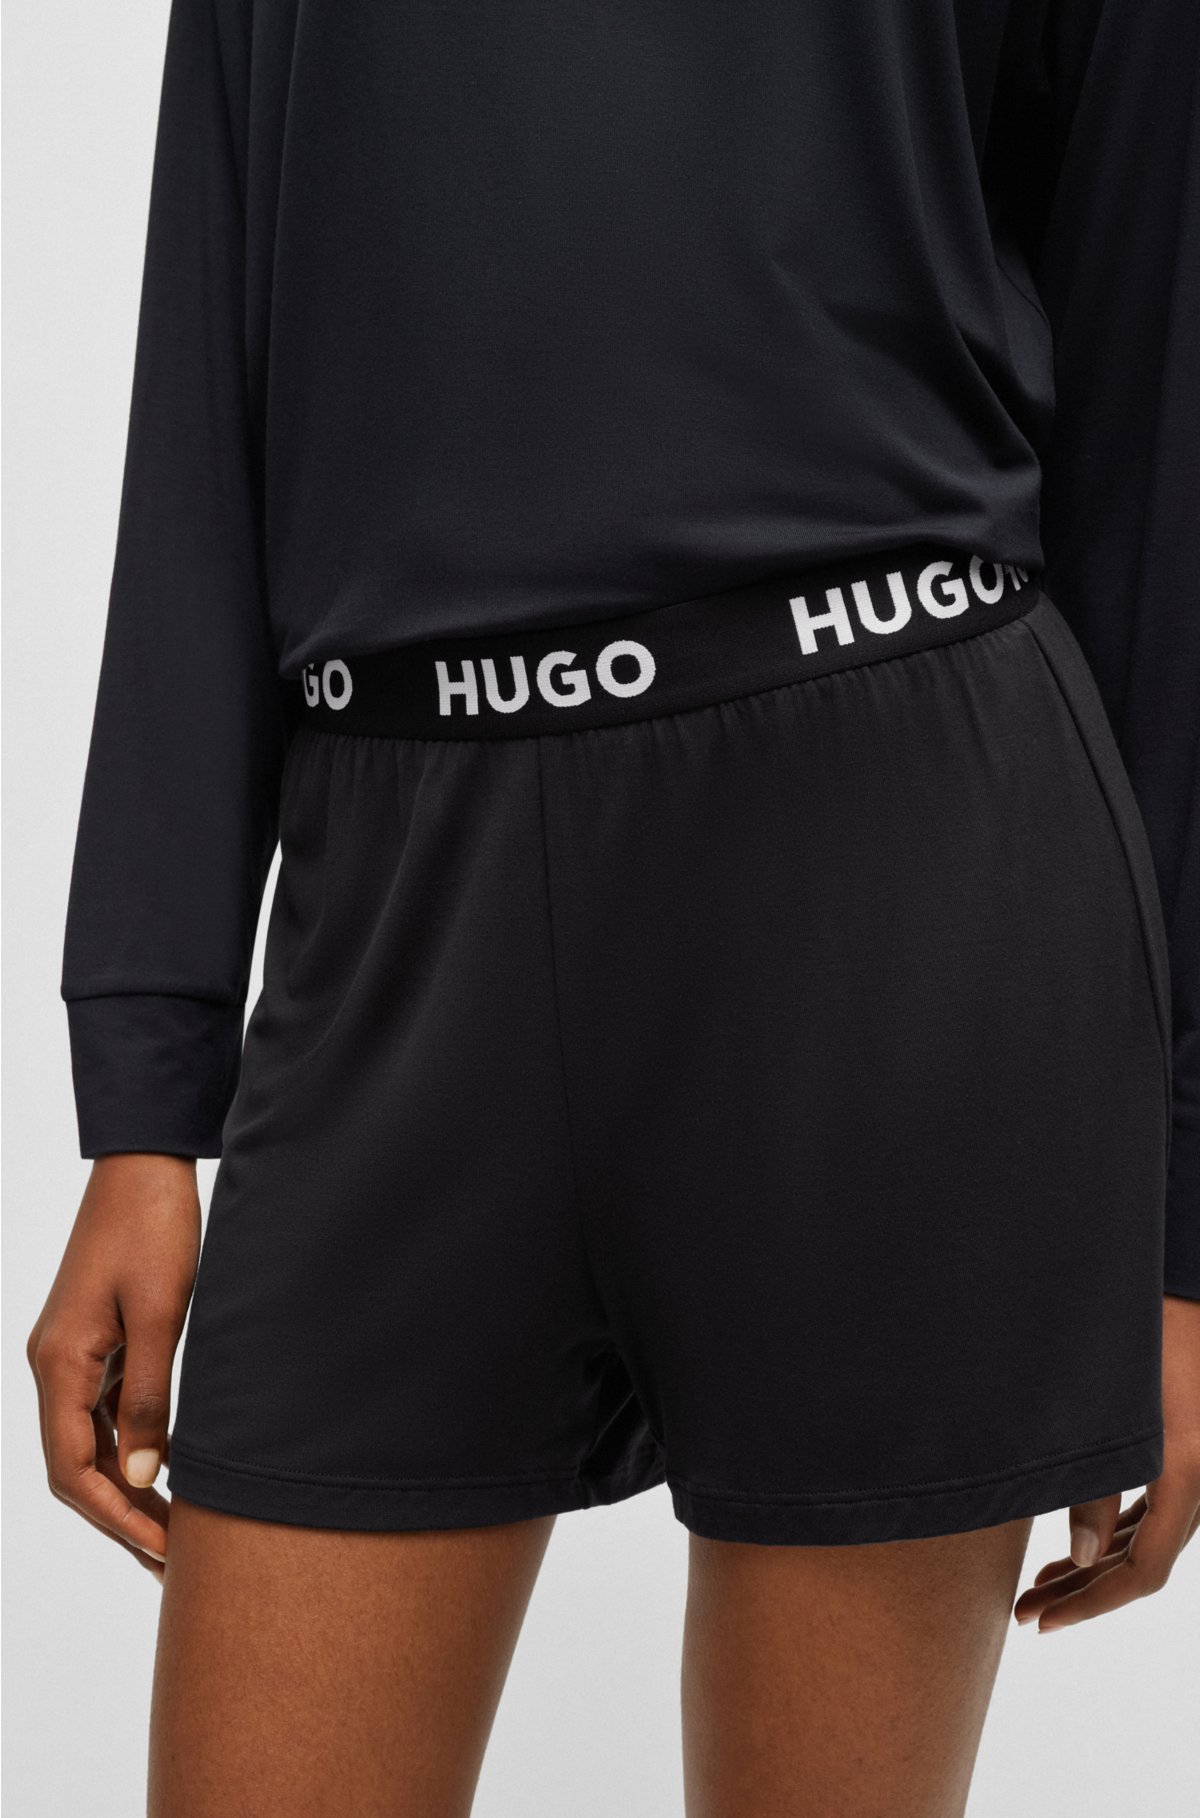 HUGO - Stretch-jersey waistband logo with shorts pyjama